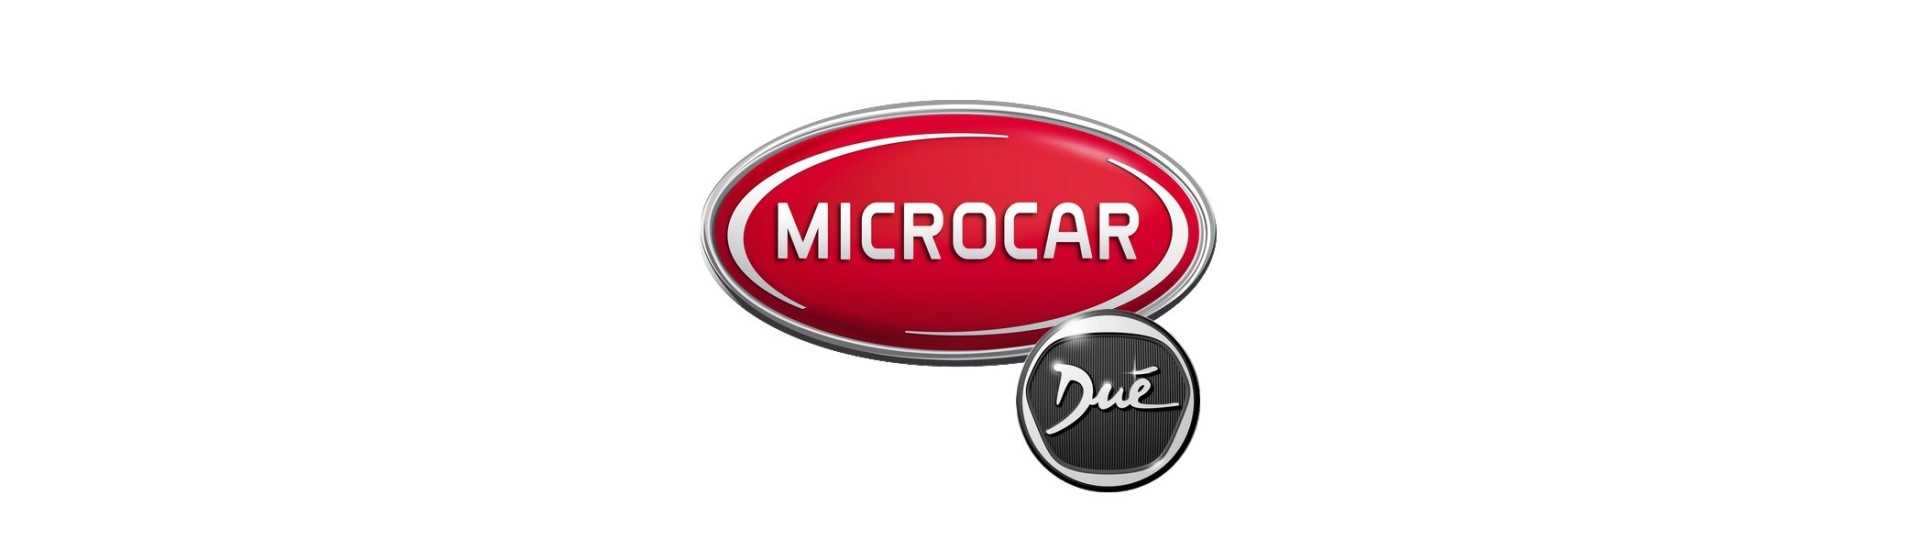 Braccio sospeso al miglior prezzo dell'auto senza permesso Microcar Dué